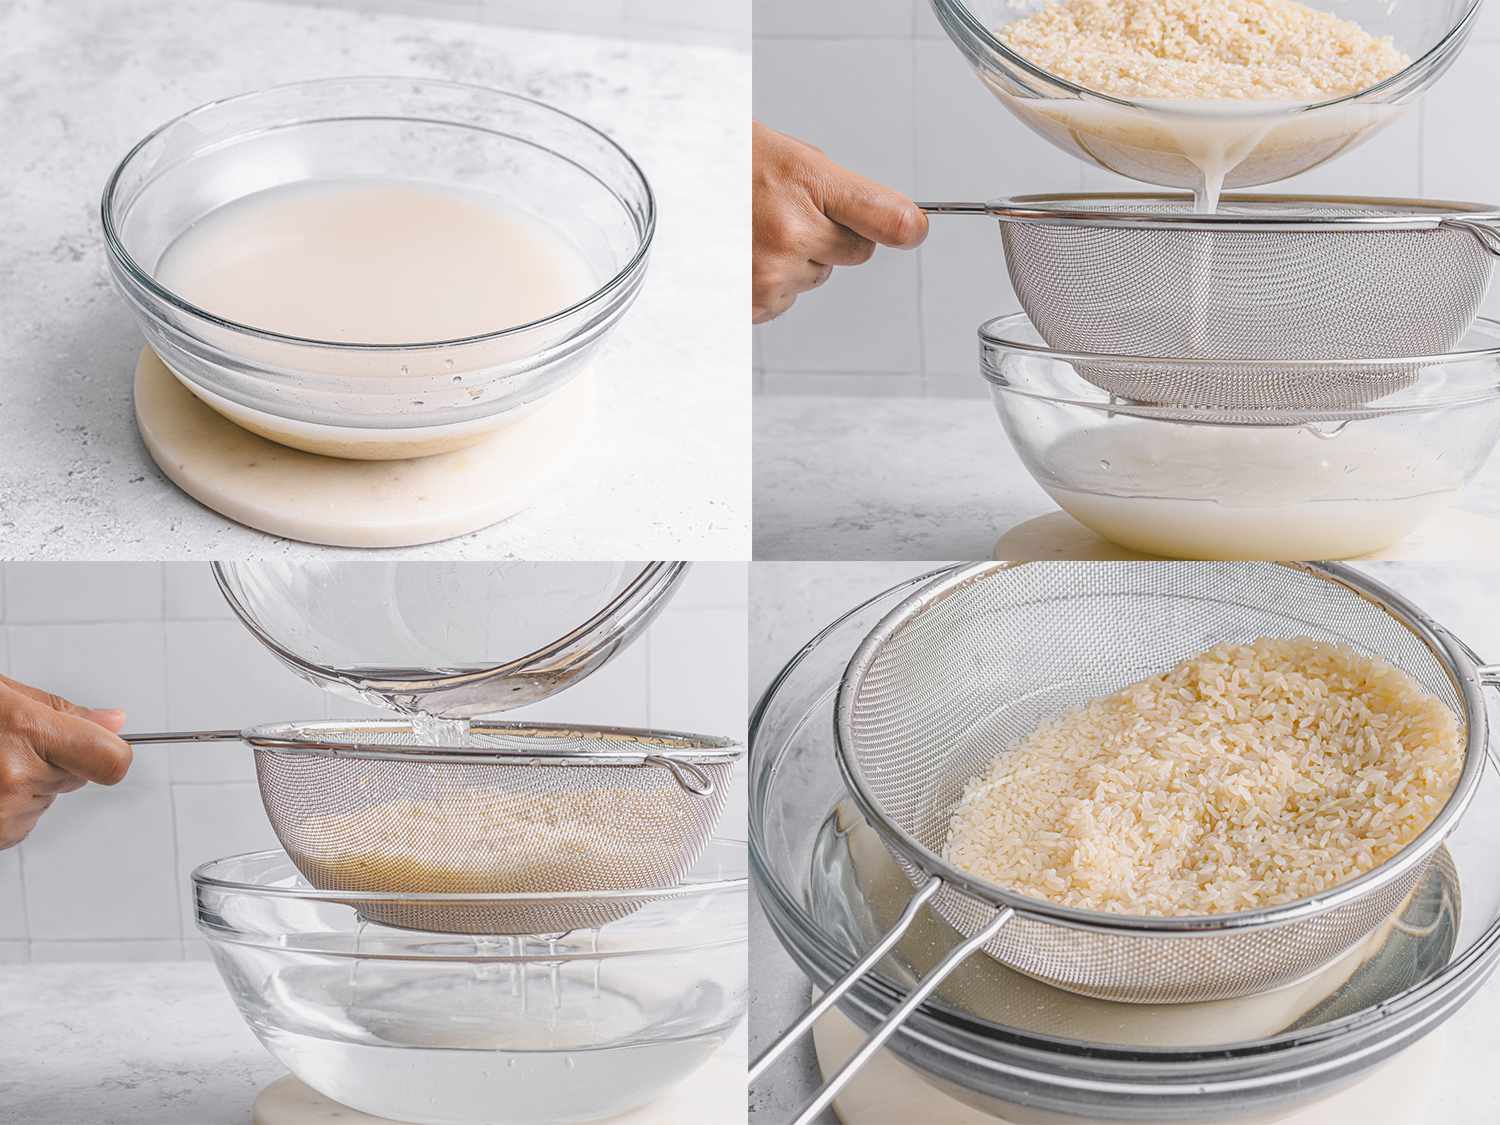 四个图像拼贴。左上:浑浊的水和碗里的米饭。右上:从碗中滤出浑浊的水。左下:清水流过滤网中的大米。右下:米饭放在碗上的滤网里